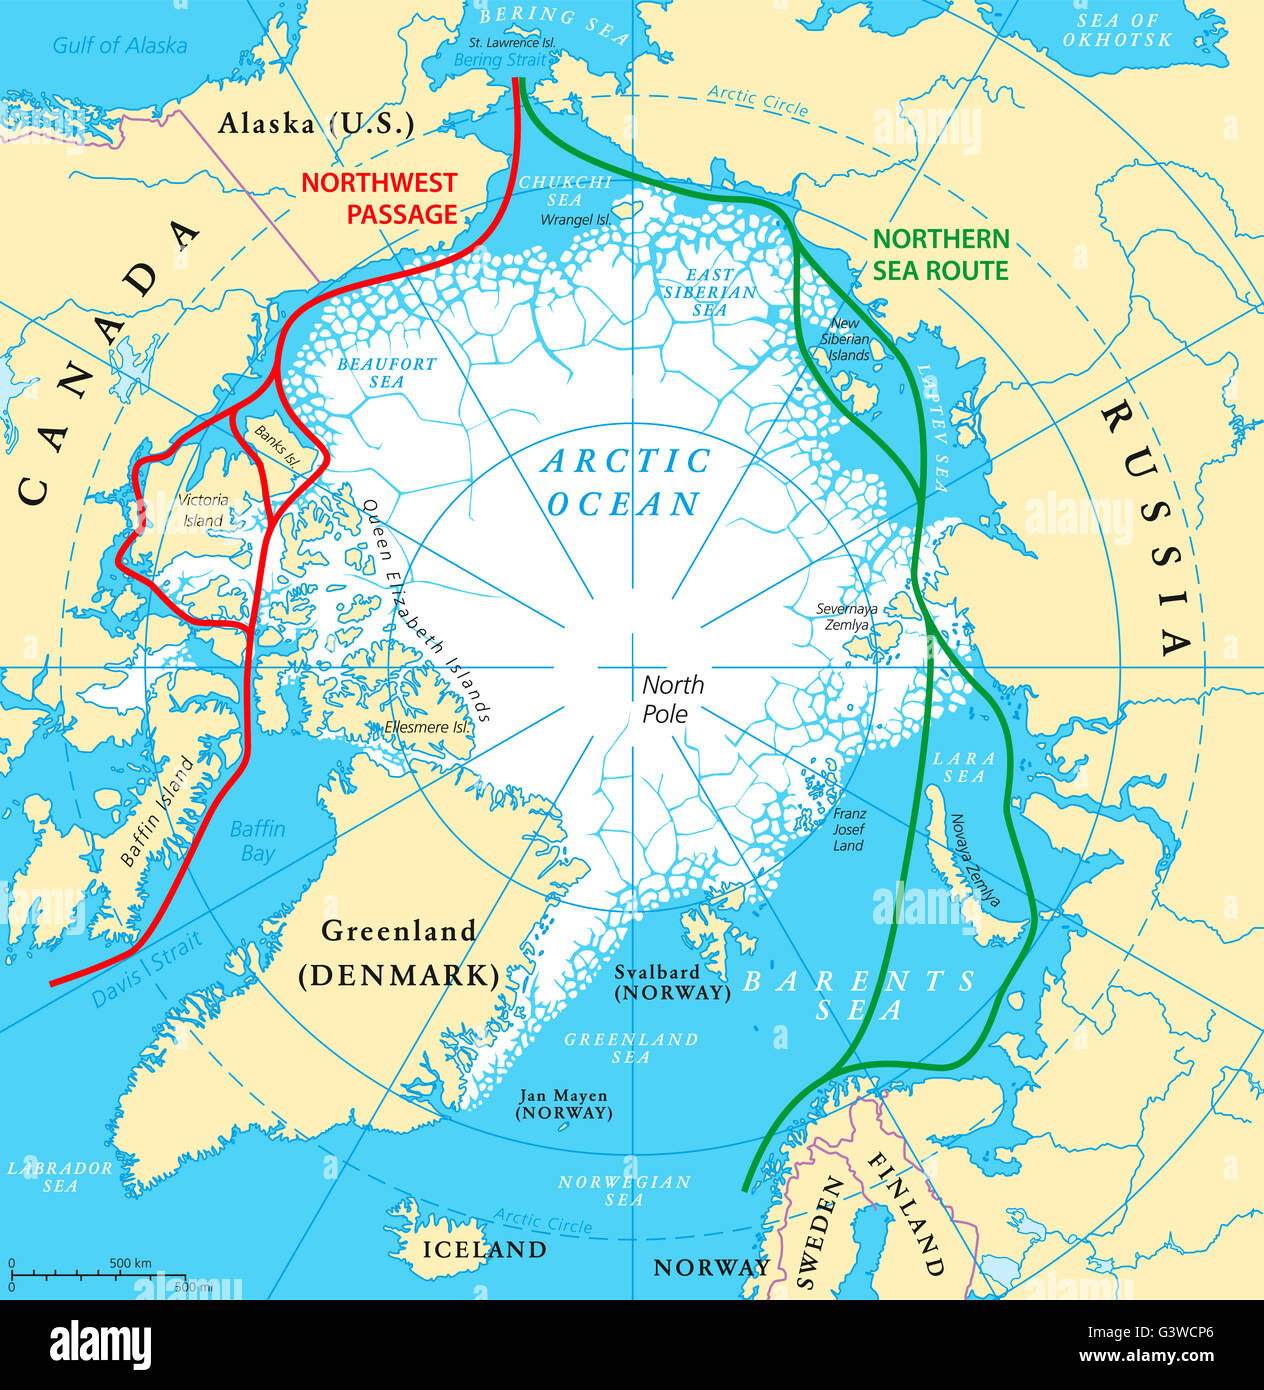 Océan Arctique à la mer plan avec passage du Nord-Ouest et de la route maritime du Nord. Carte de la région arctique. Banque D'Images